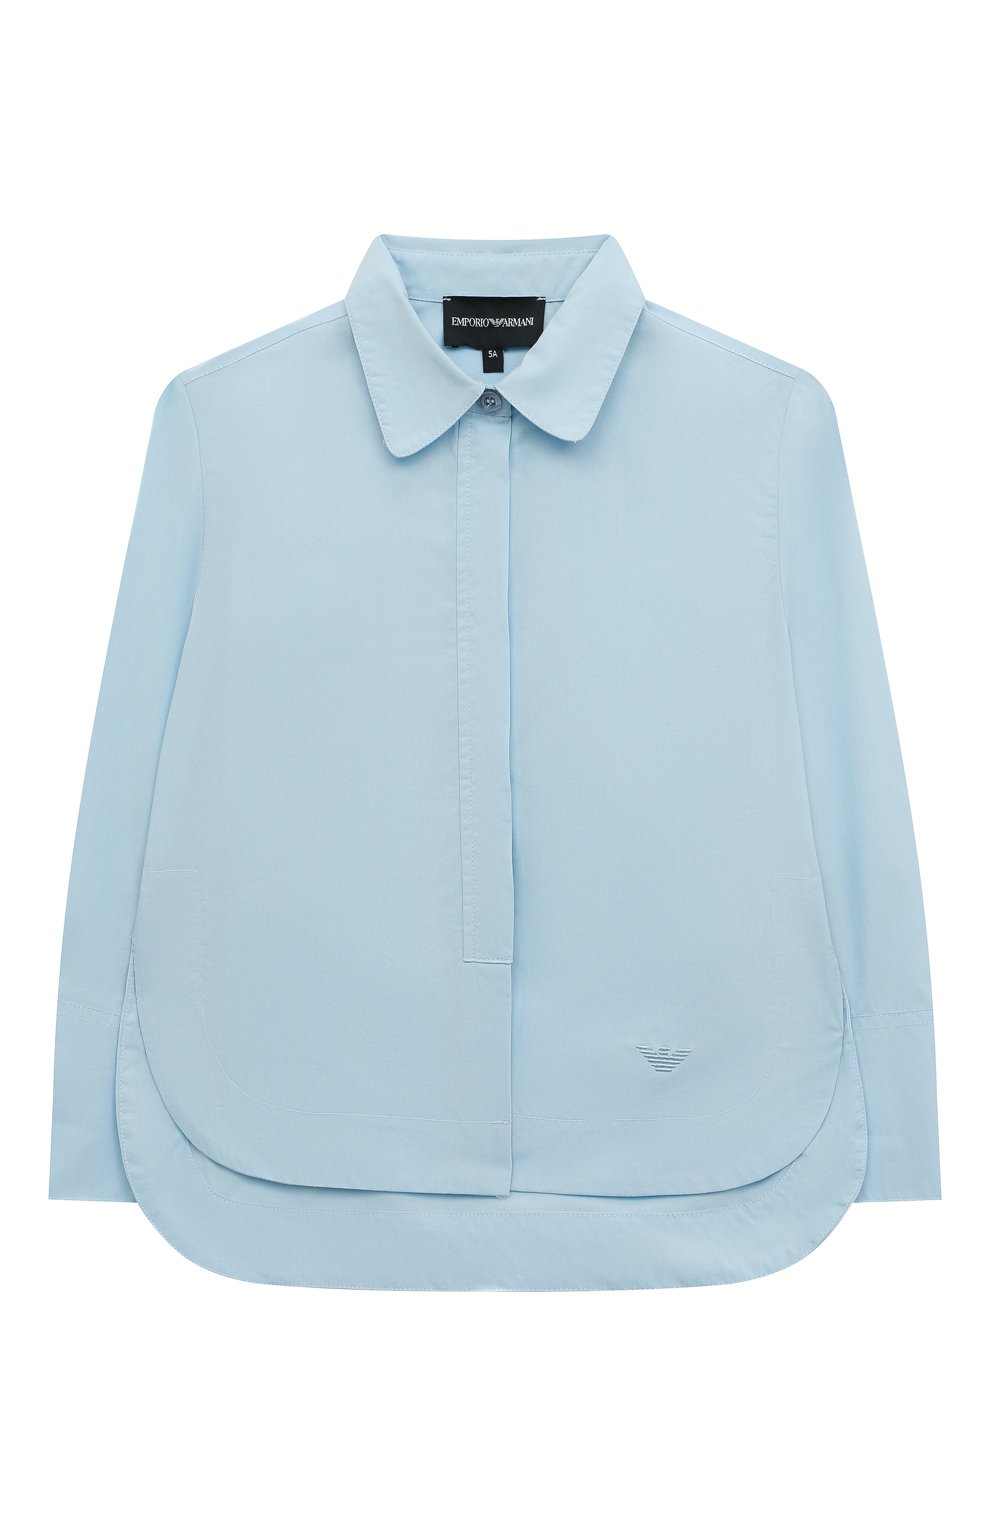 Блузы Emporio Armani, Хлопковая блузка Emporio Armani, Тунис, Голубой, Хлопок: 100%;, 12883135  - купить